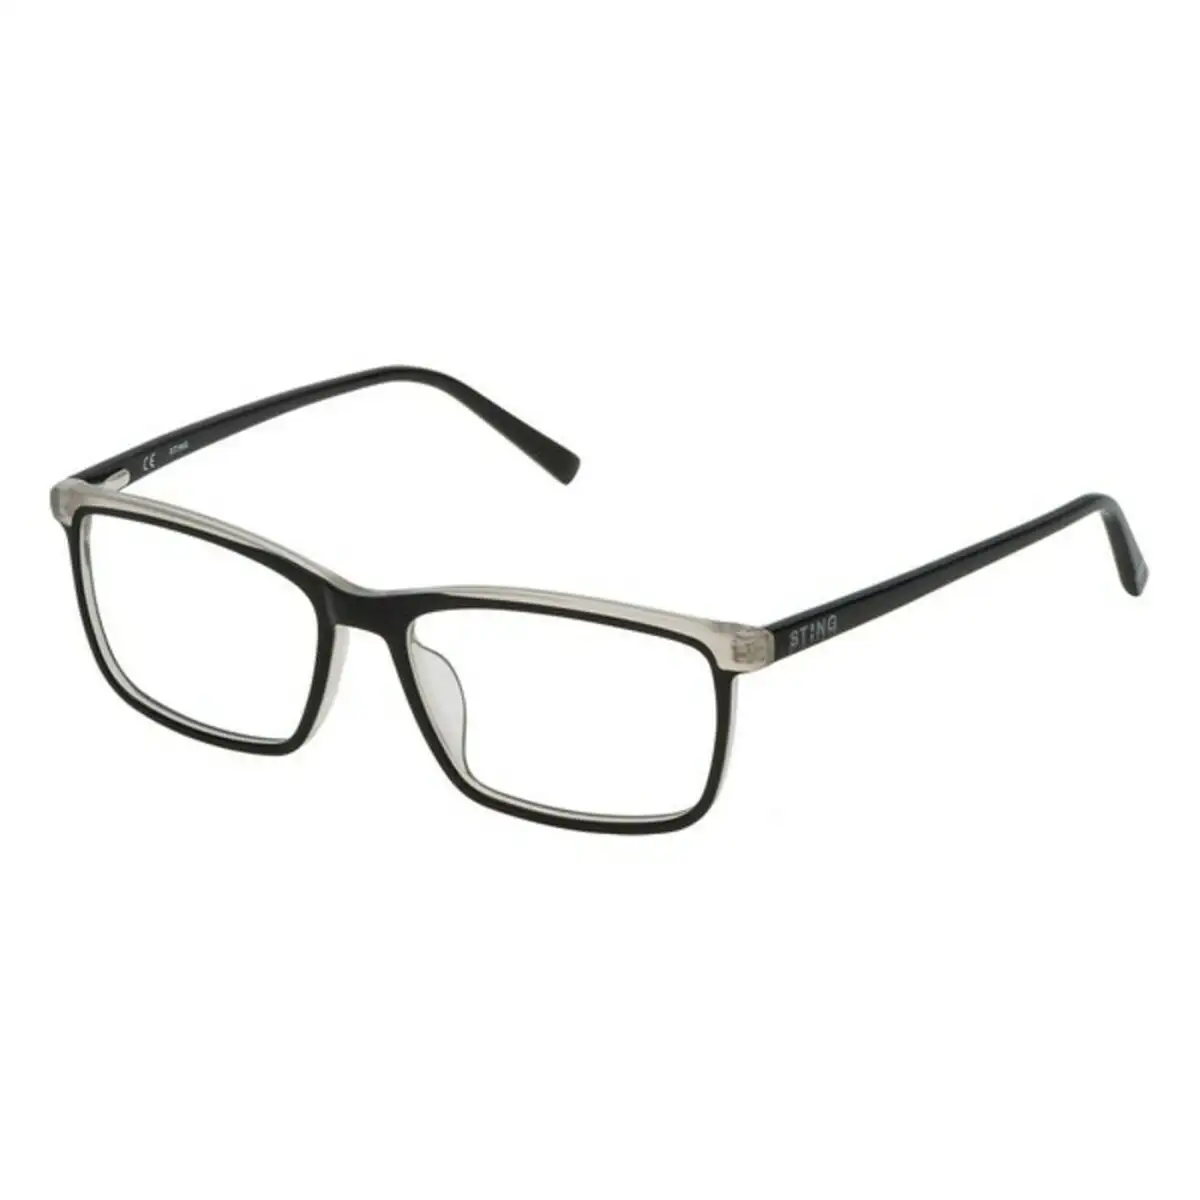 Monture de lunettes homme sting vst1075401al gris_4266. DIAYTAR SENEGAL - Où Chaque Détail Compte. Naviguez à travers notre gamme variée et choisissez des articles qui ajoutent une touche spéciale à votre quotidien, toujours avec qualité et style.